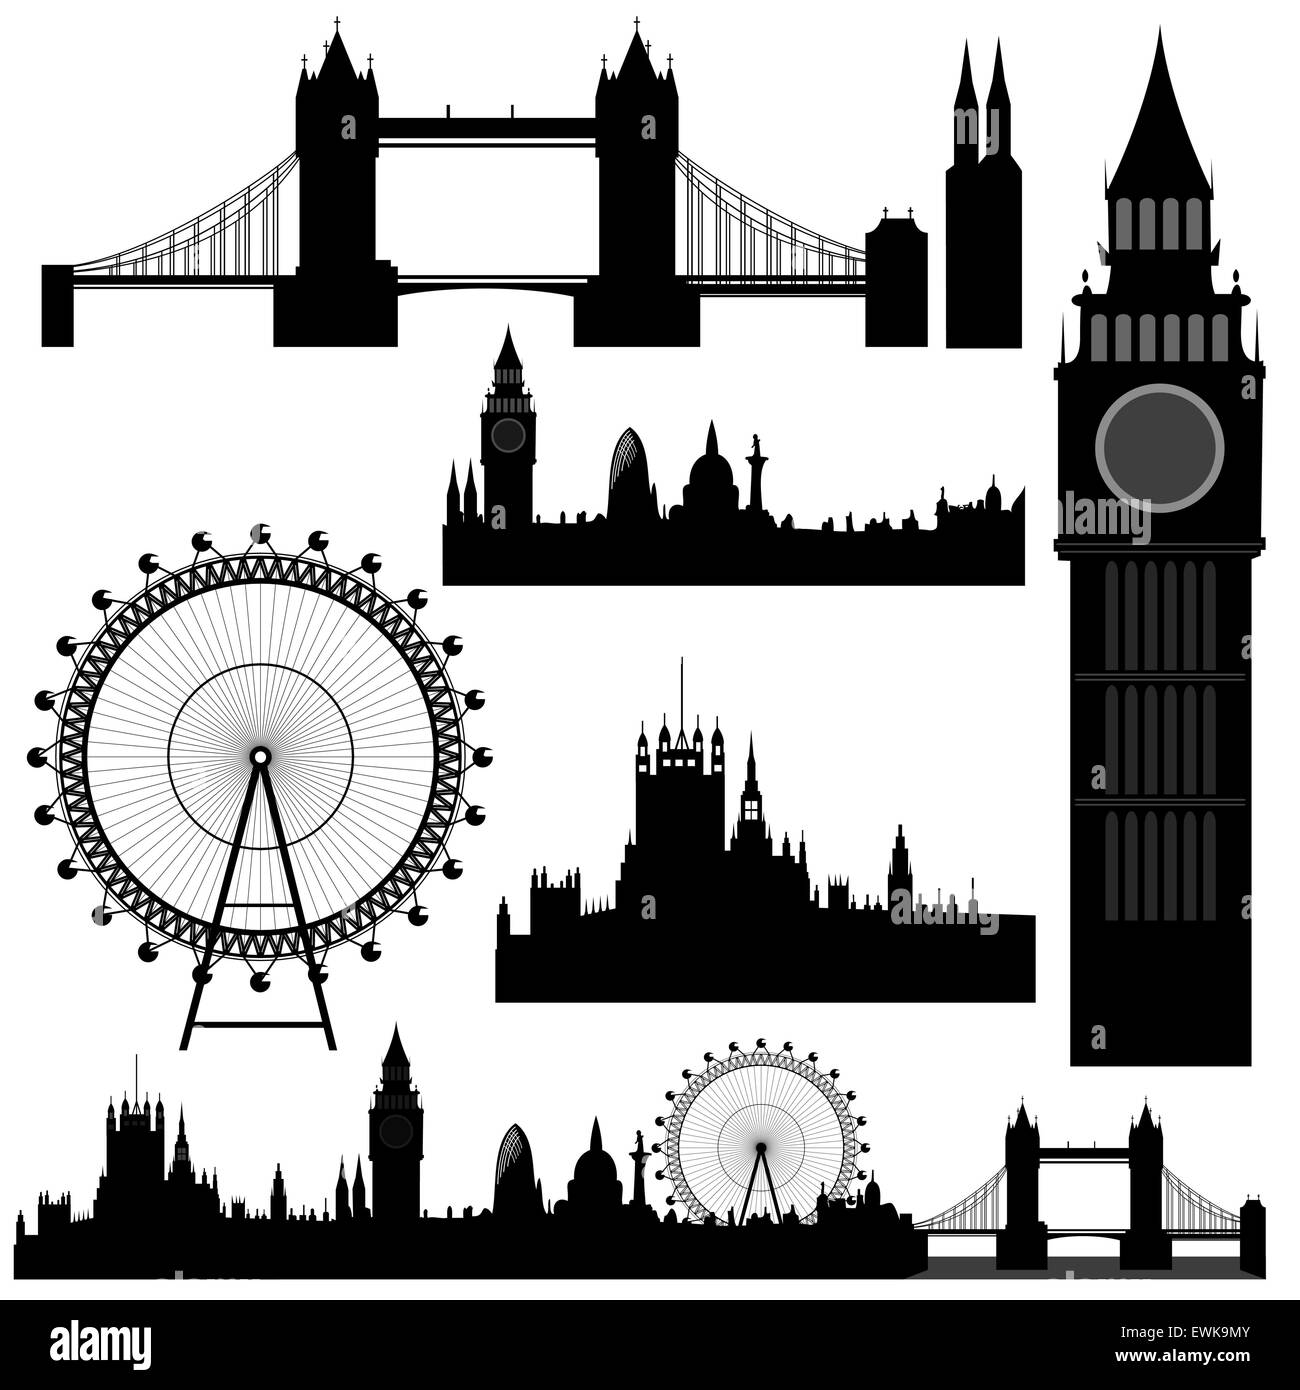 Vektor-Illustration der verschiedenen Sehenswürdigkeiten von London Stock Vektor